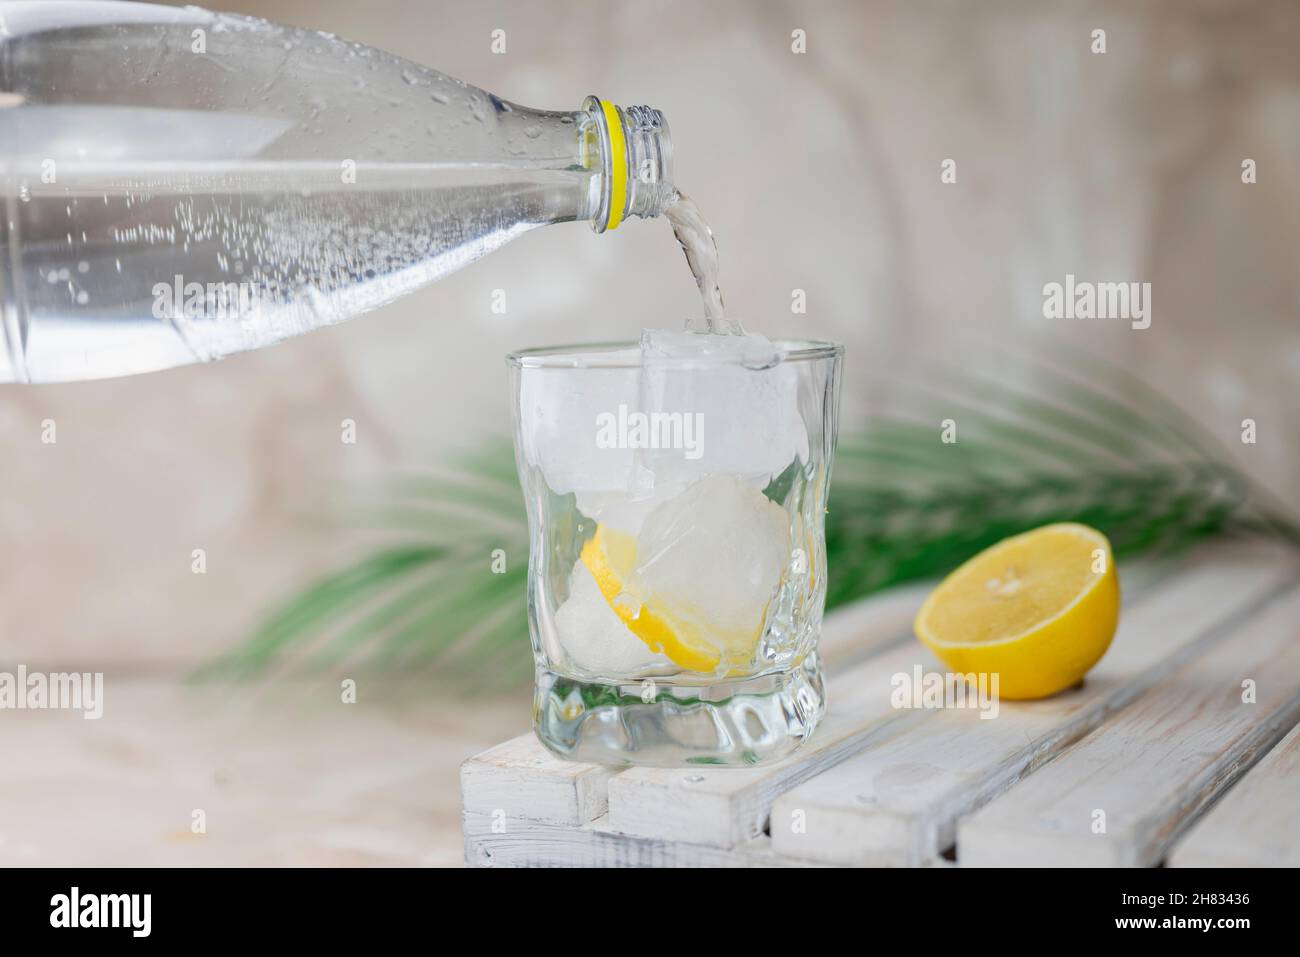 de l'eau ou du tonique est versé d'une bouteille dans un verre avec de la glace et du citron Banque D'Images